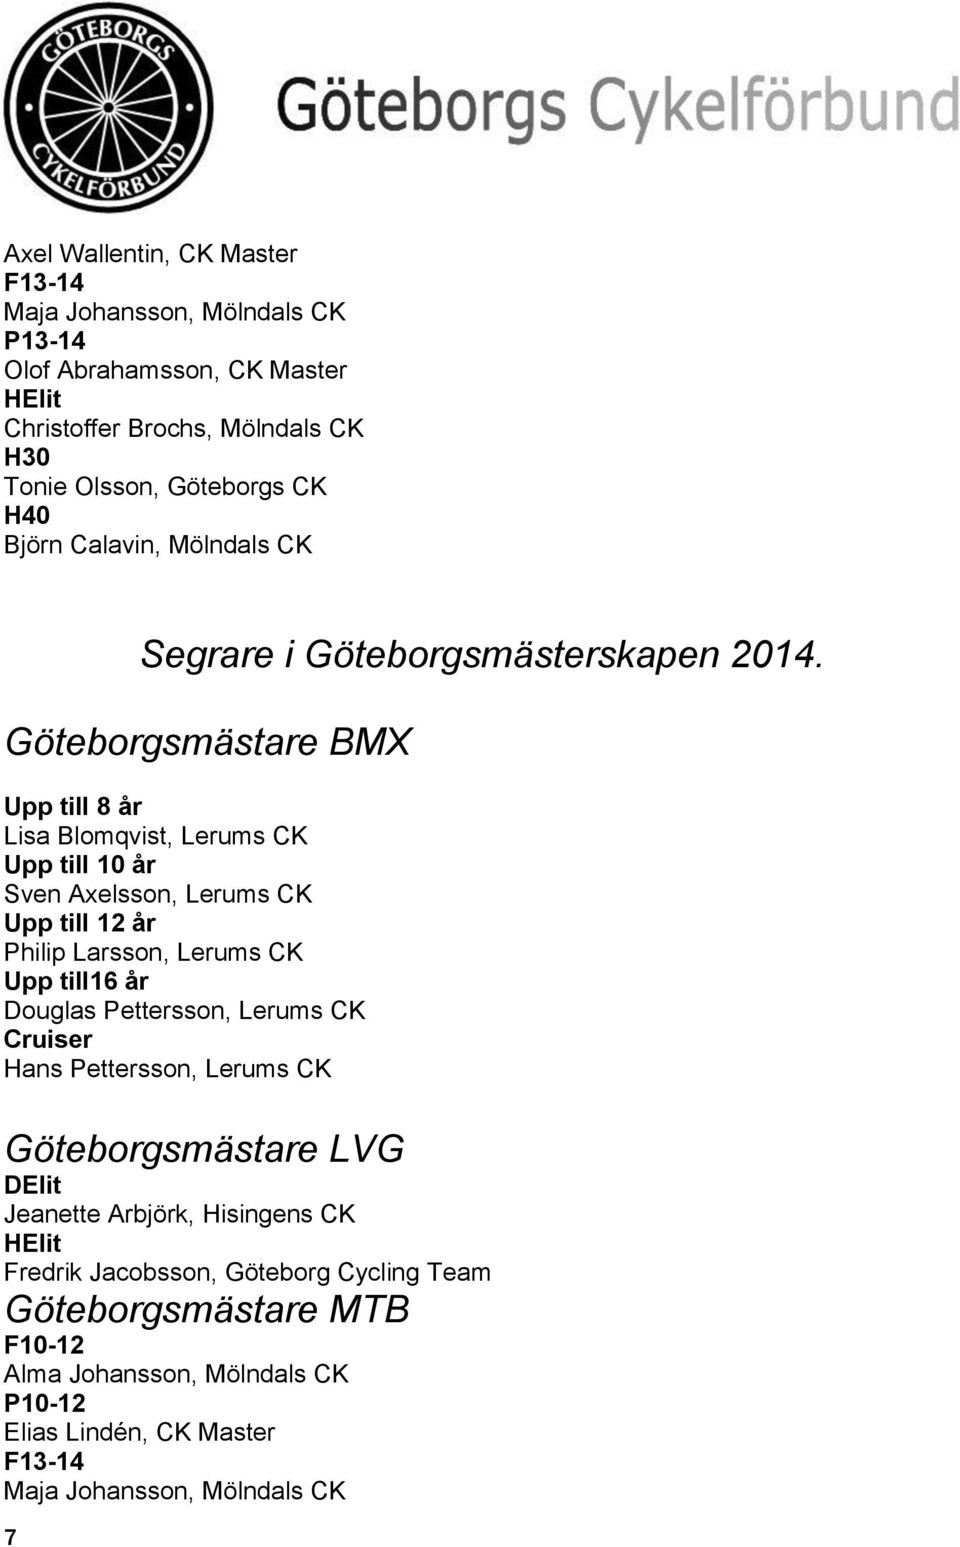 Göteborgsmästare BMX Upp till 8 år Lisa Blomqvist, Lerums CK Upp till 10 år Sven Axelsson, Lerums CK Upp till 12 år Philip Larsson, Lerums CK Upp till16 år Douglas